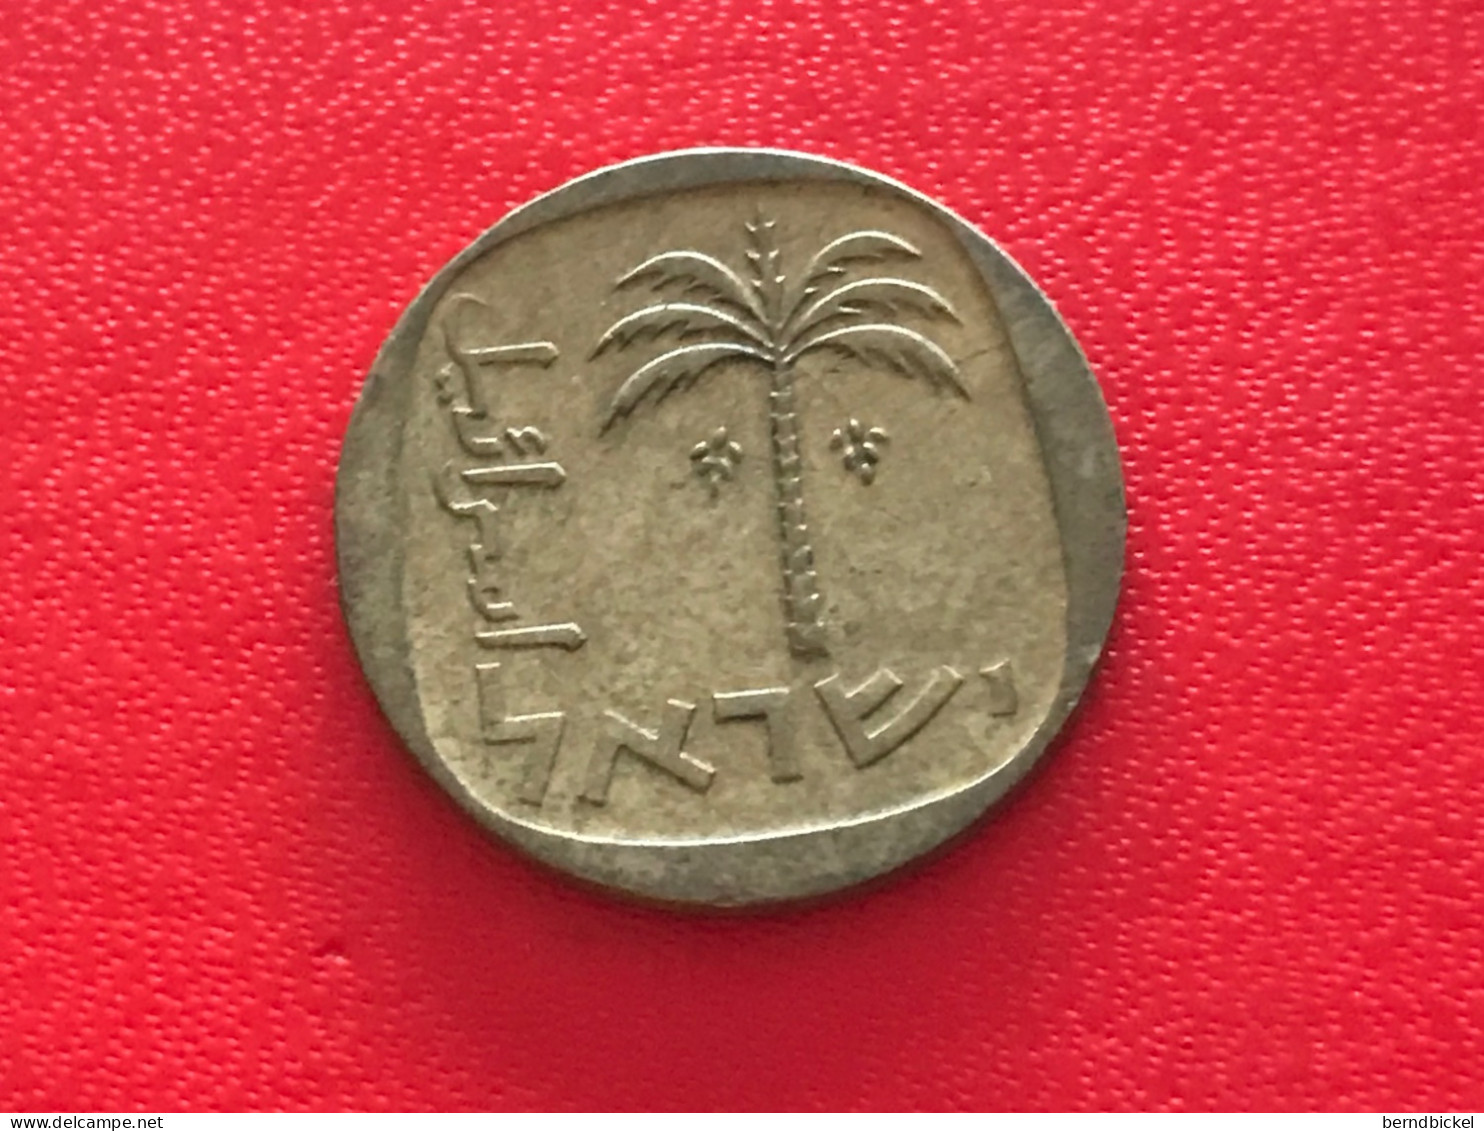 Münze Münzen Umlaufmünze Israel 10 Agorot 1974 - Israele